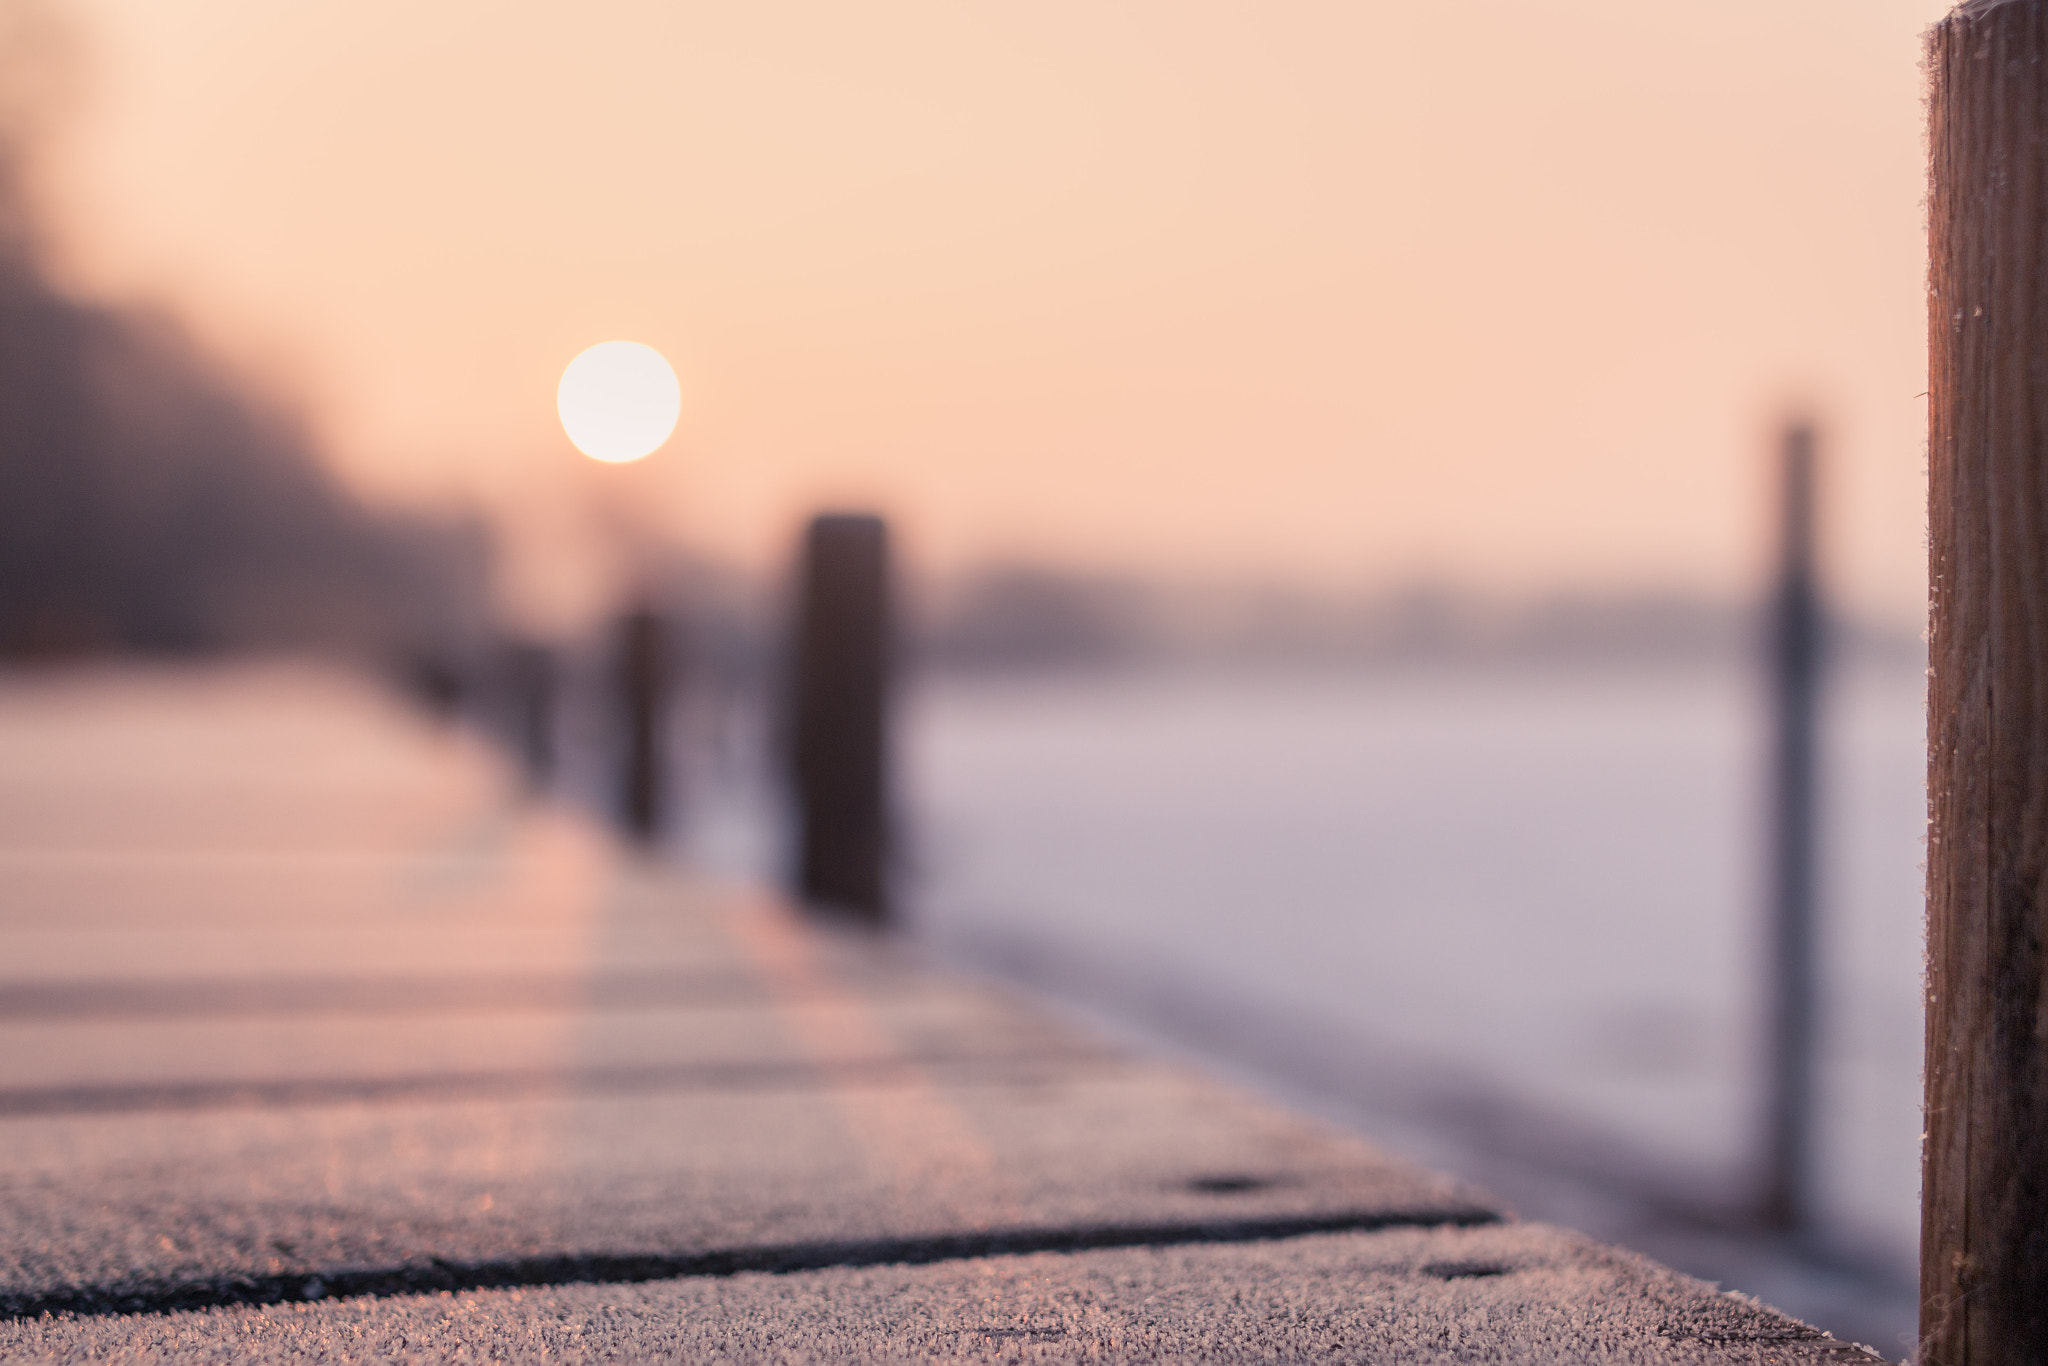 Canon EOS 70D + Sigma 24mm F1.4 DG HSM Art sample photo. Frozen sunrise pier photography